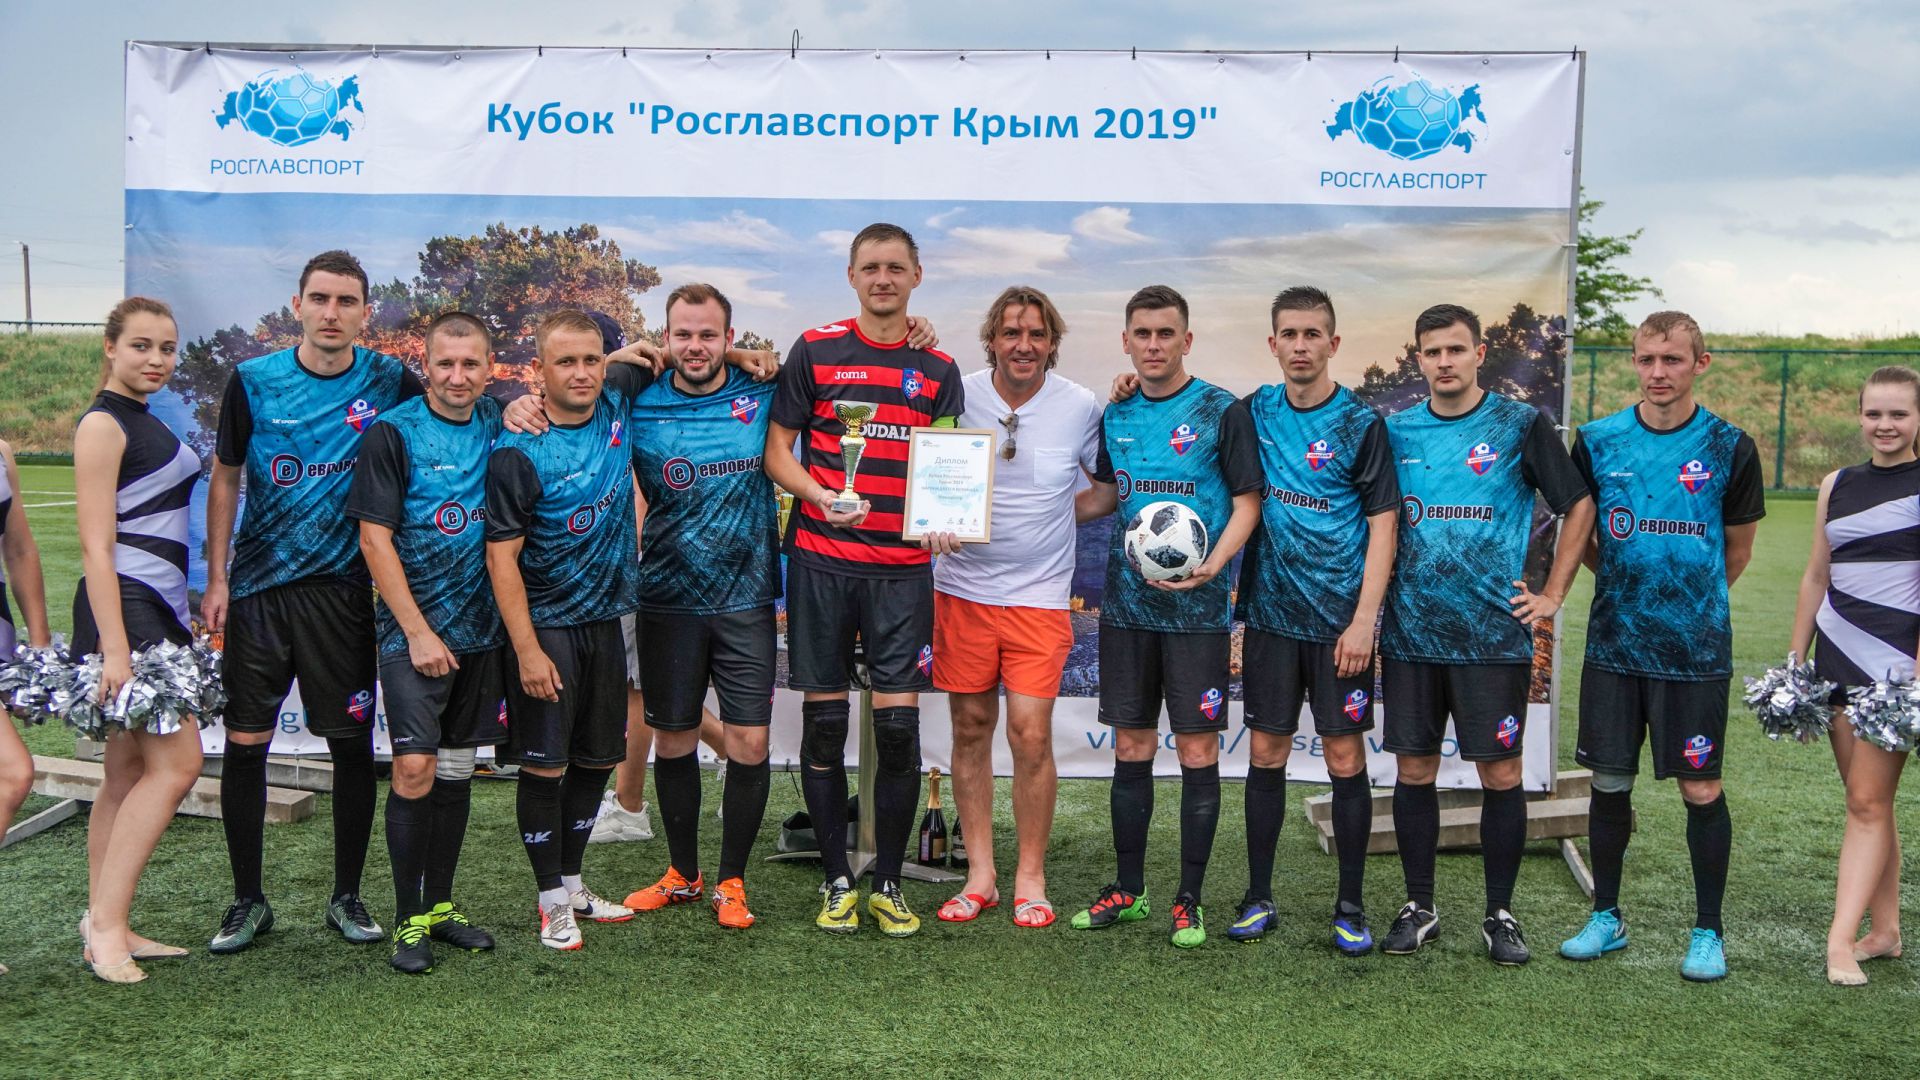 Корпоративный турнир по футболу «Кубок Росглавспорт Крым 2019».